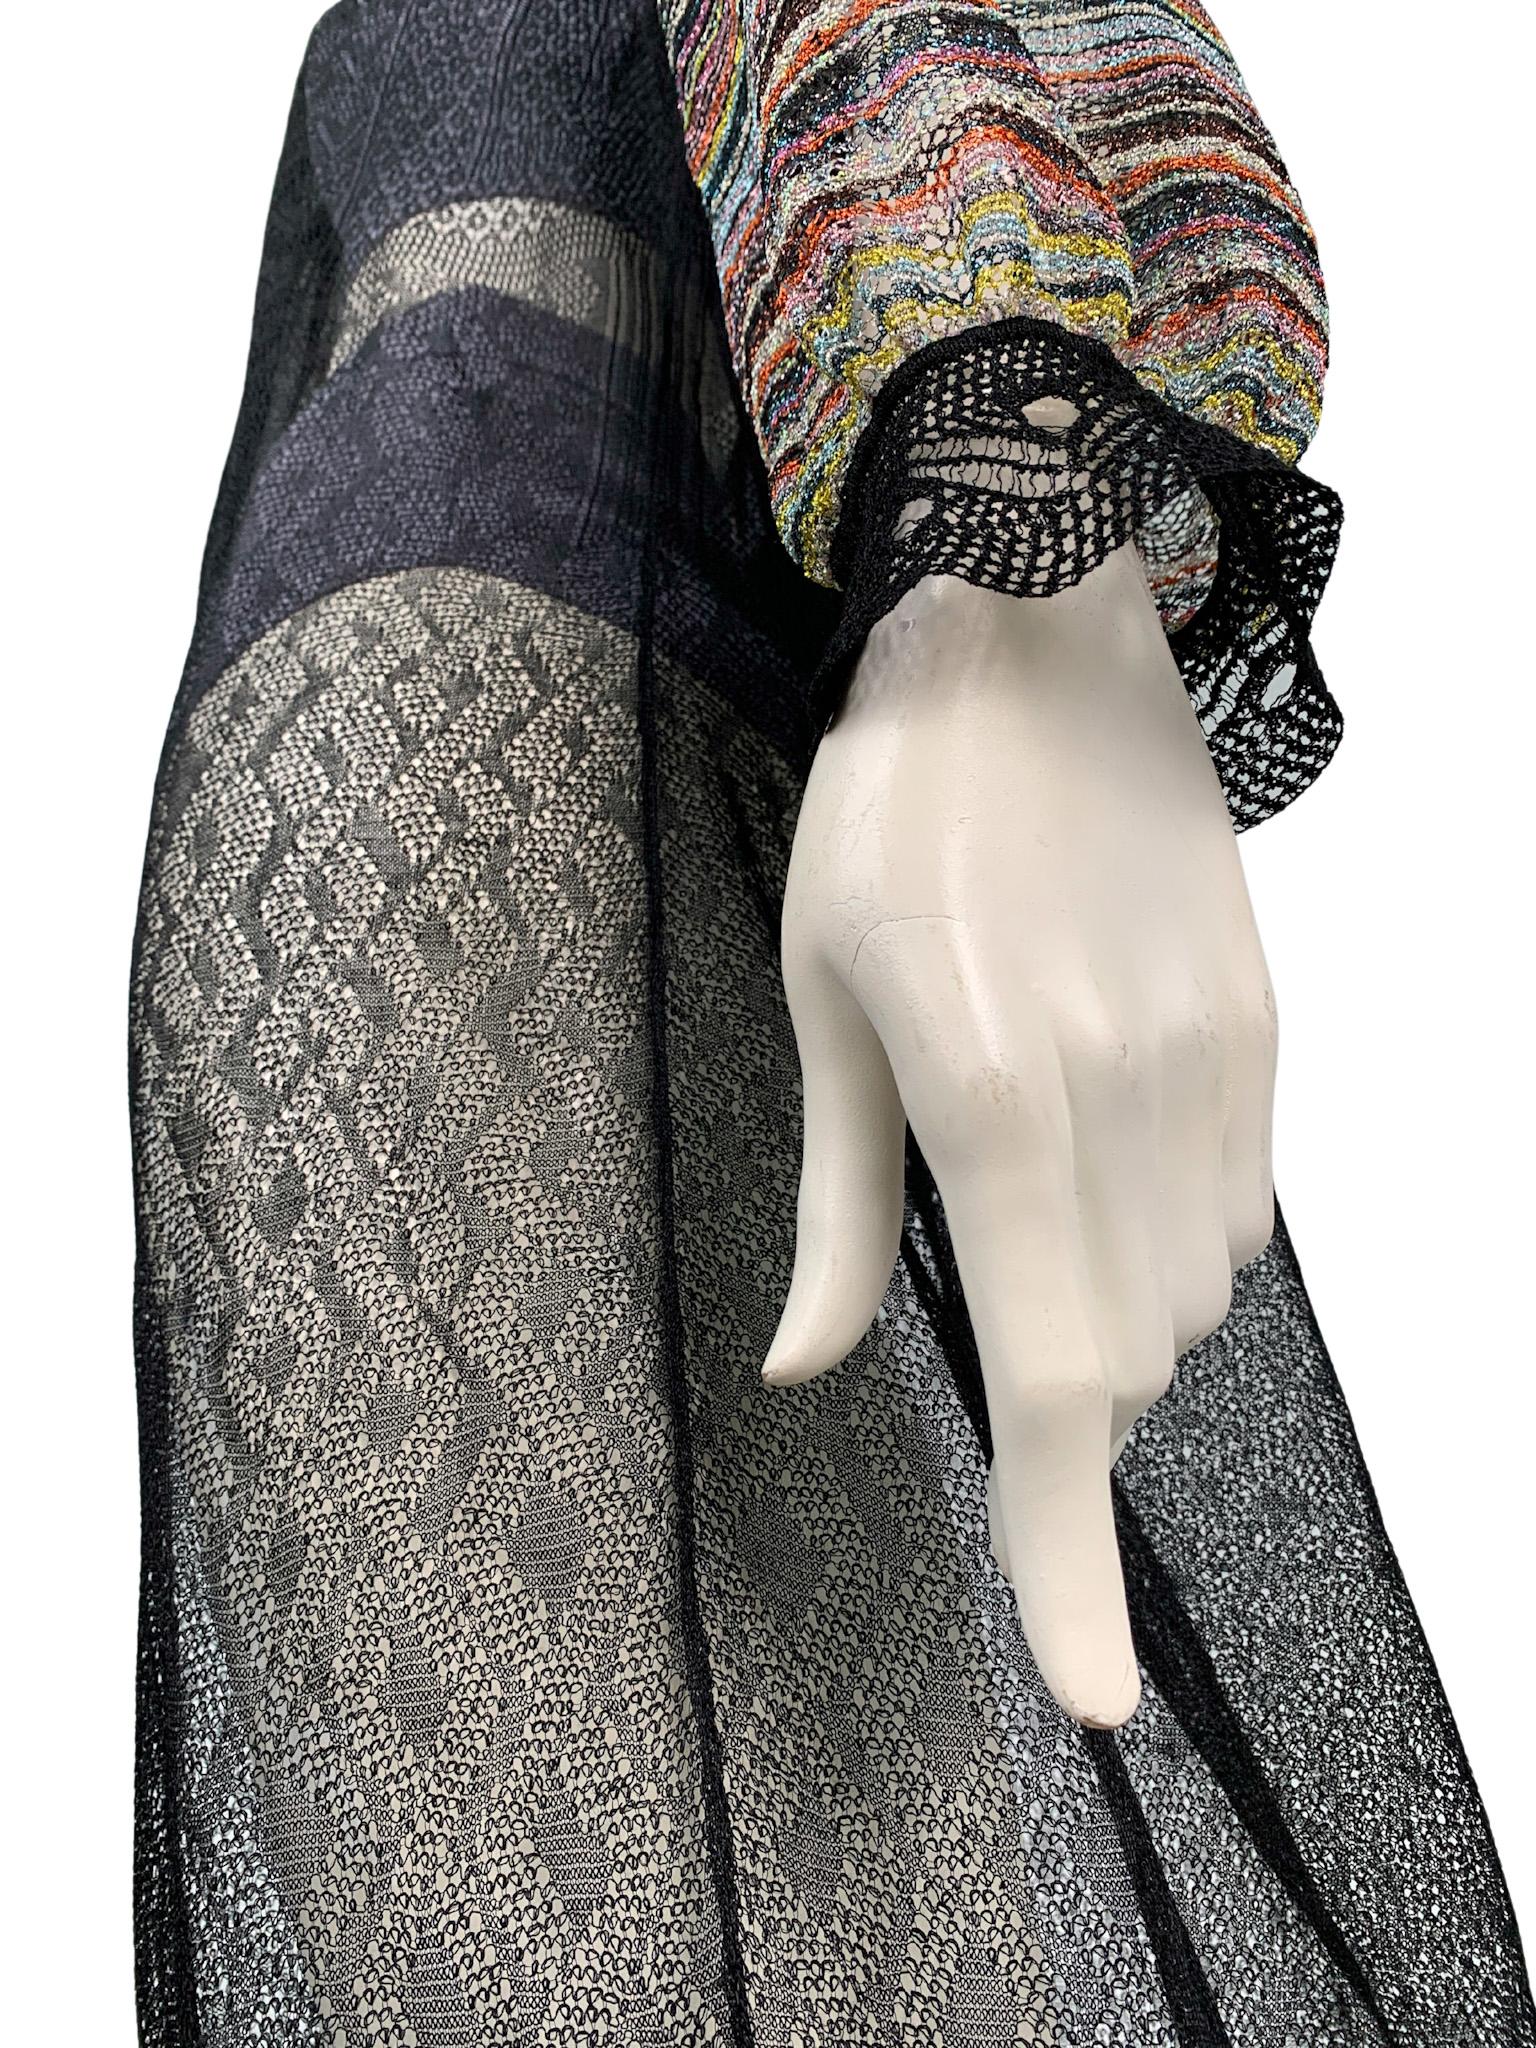 2000s Missoni multicolour metallic openwork knit transformer 4-in-1 maxi dress 4